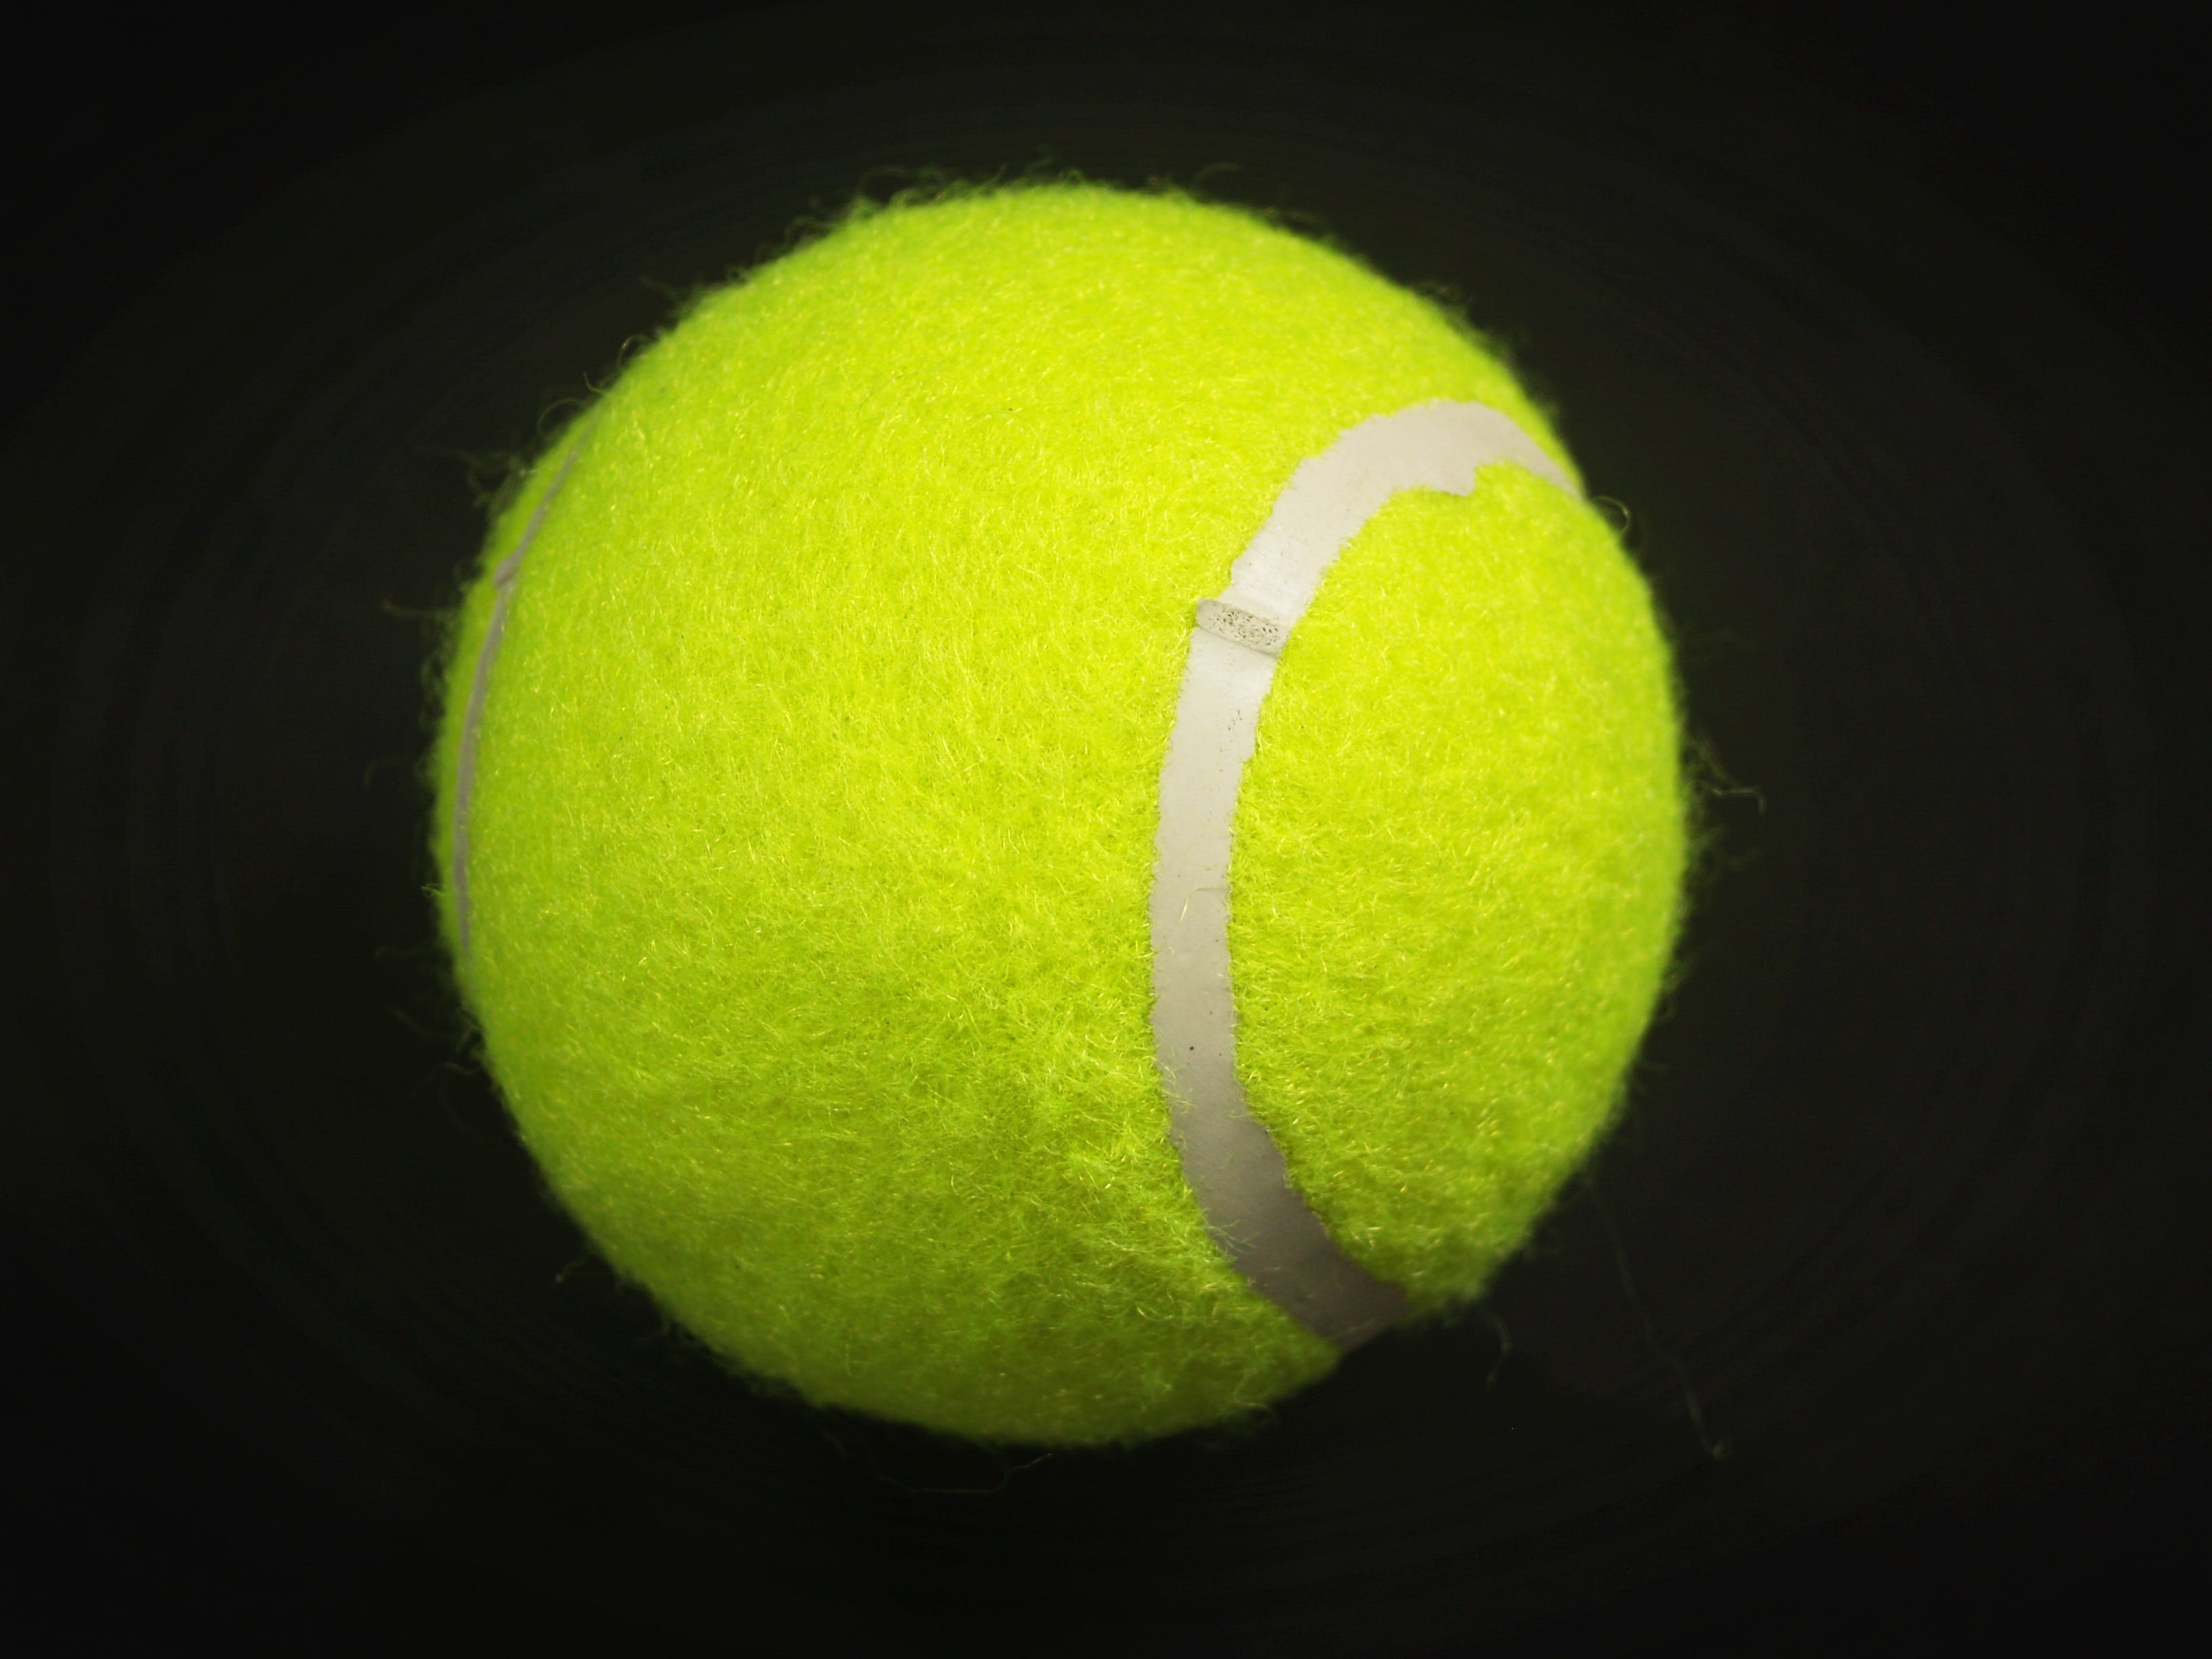 tennis ball wallpaper,tennis ball,ball,green,tennis,sports equipment